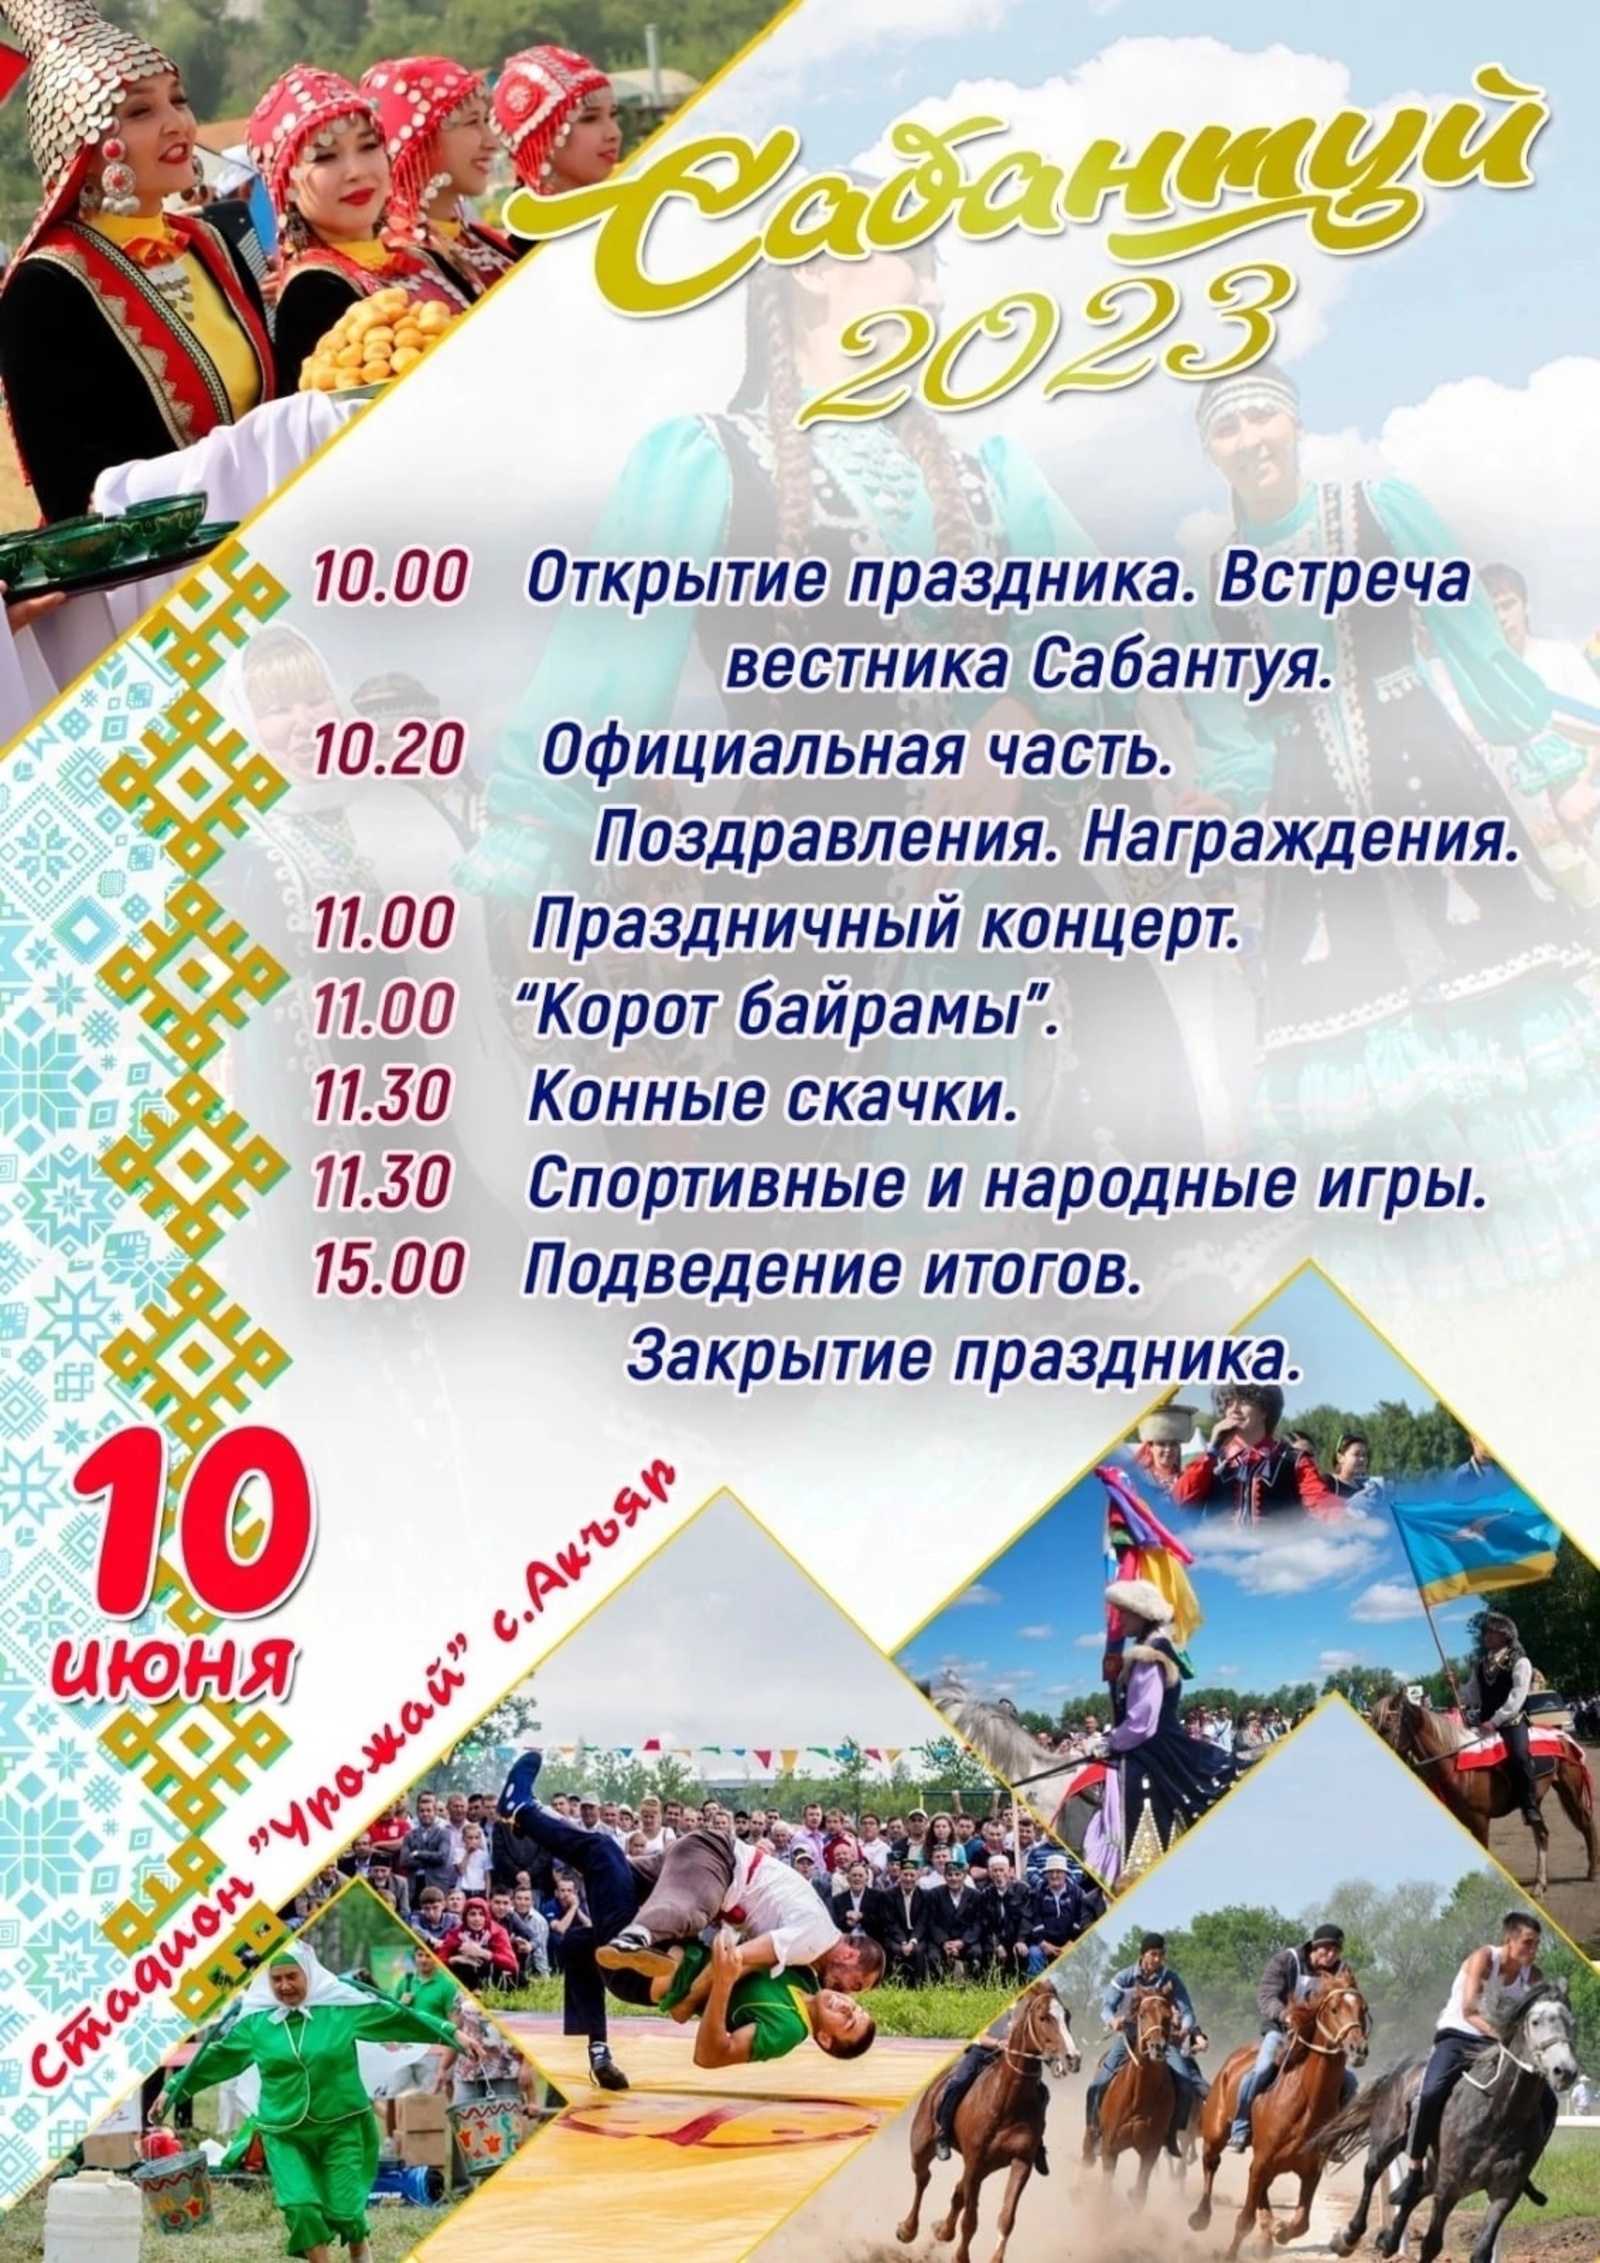 Традиционный "Сабантуй - 2023" состоится 10 июня на стадионе “Урожай” села Акъяр